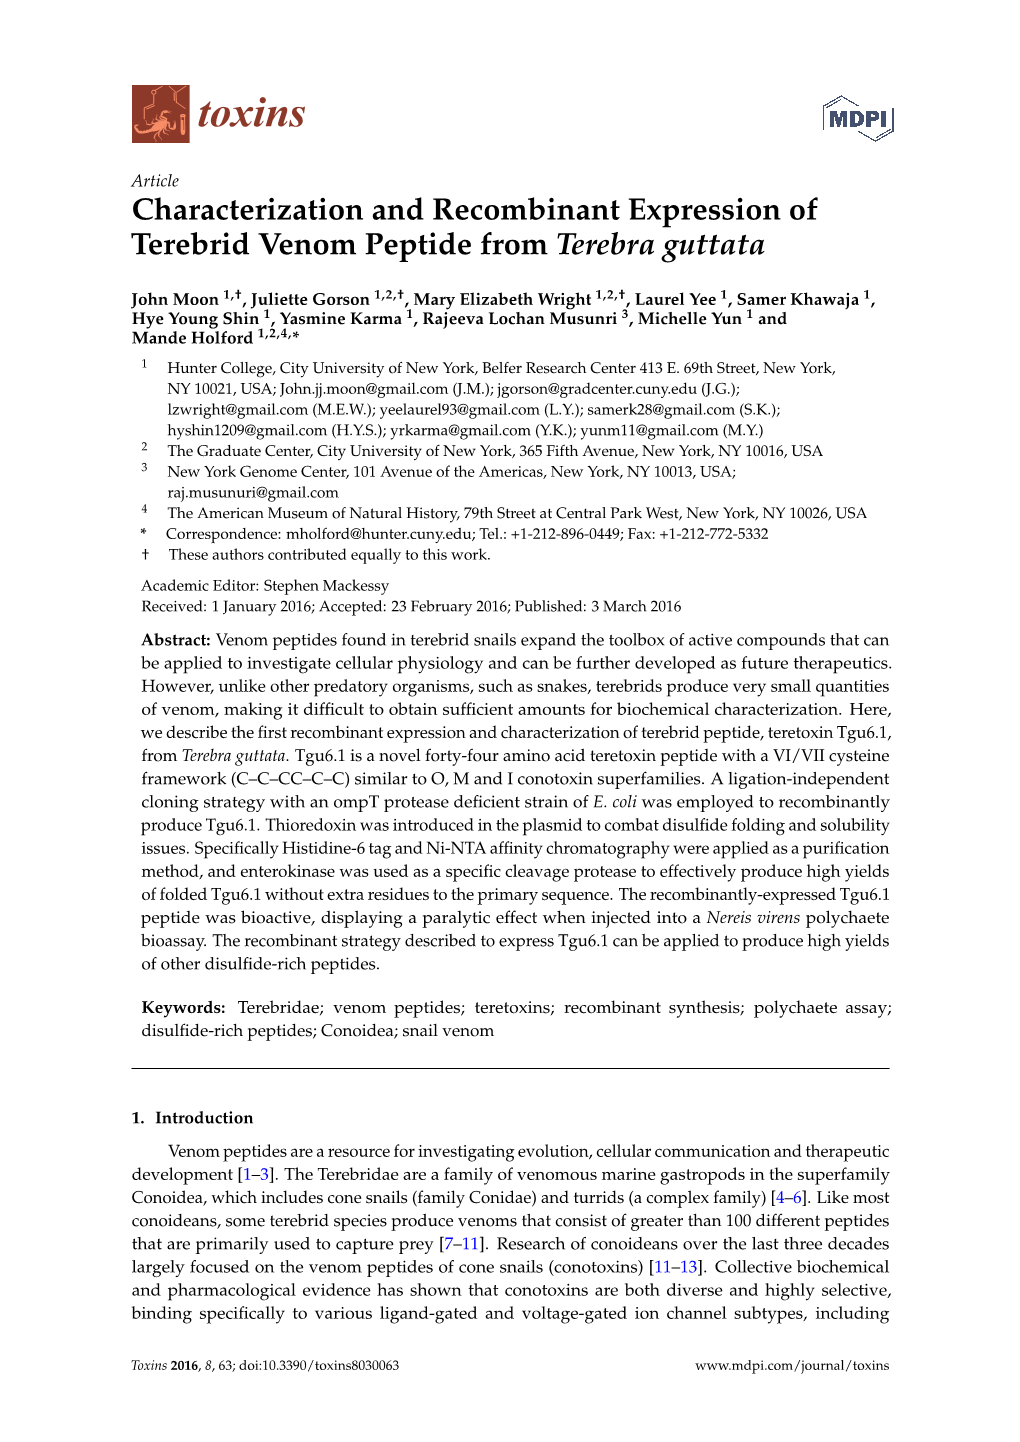 Characterization and Recombinant Expression of Terebrid Venom Peptide from Terebra Guttata